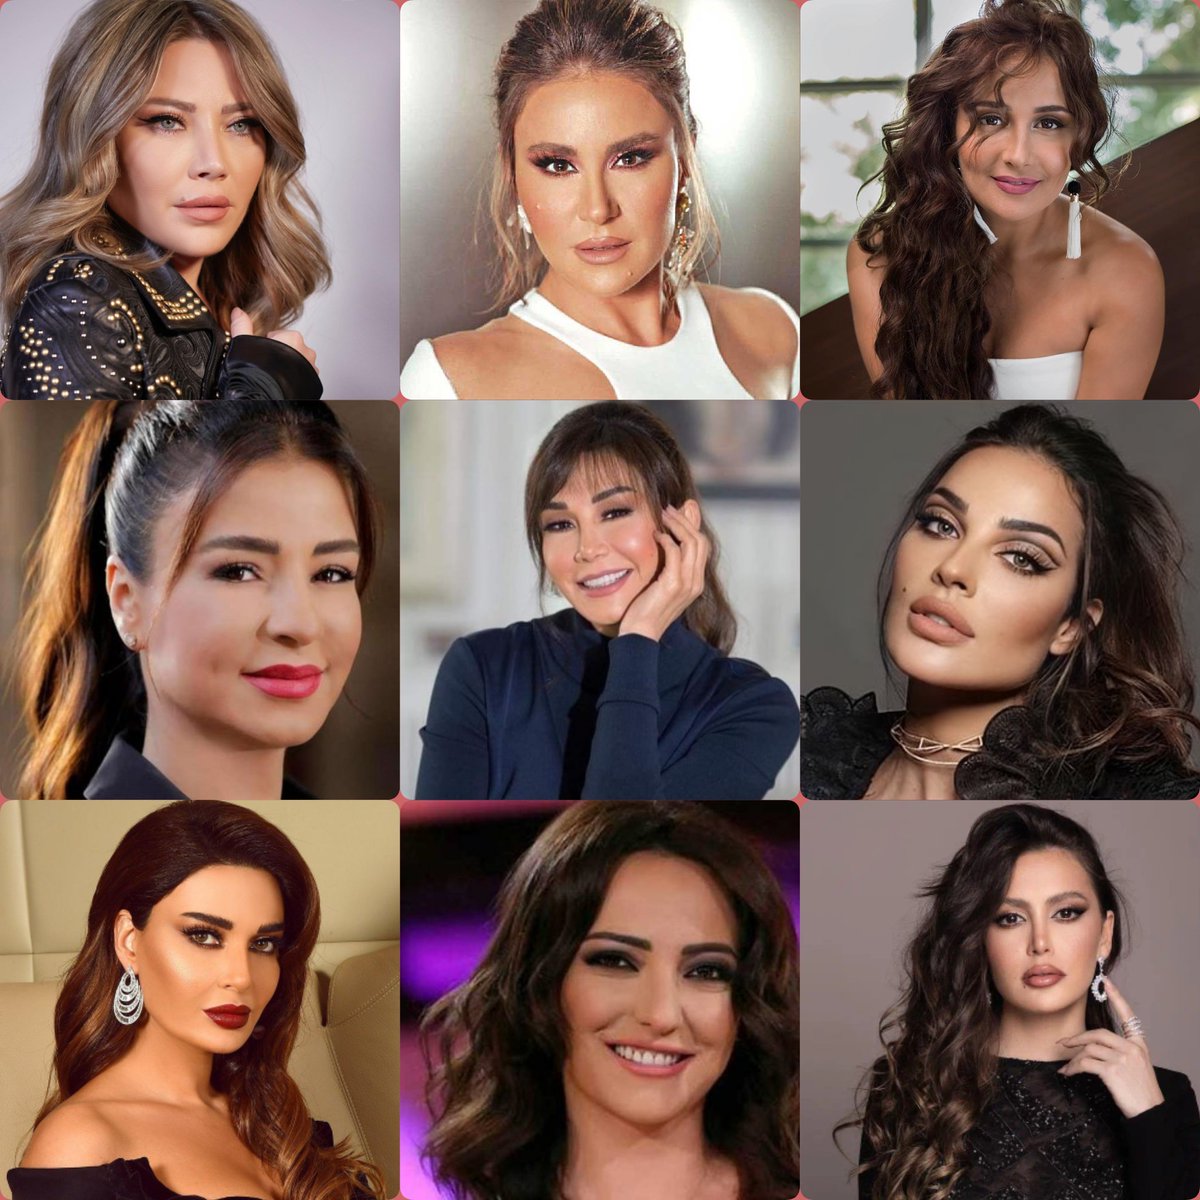 من هي أفضل  ممثلة عربية برأيكم ؟؟؟!!!

#سؤال_جواب 
#تقسيماتي